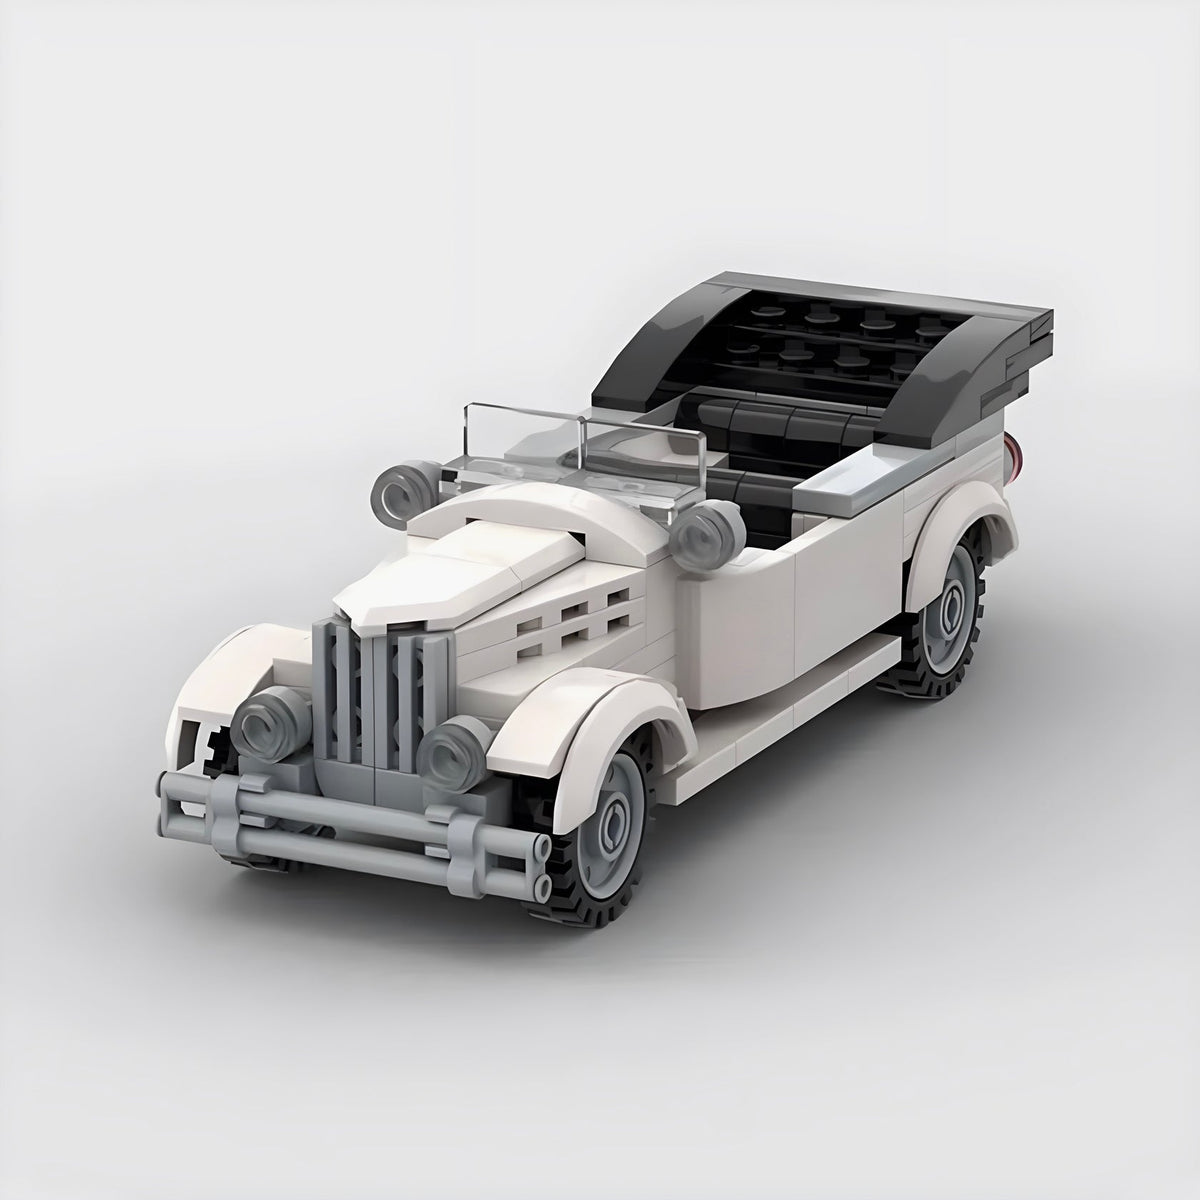 Rolls-Royce Phantom V 1961 made from lego building blocks